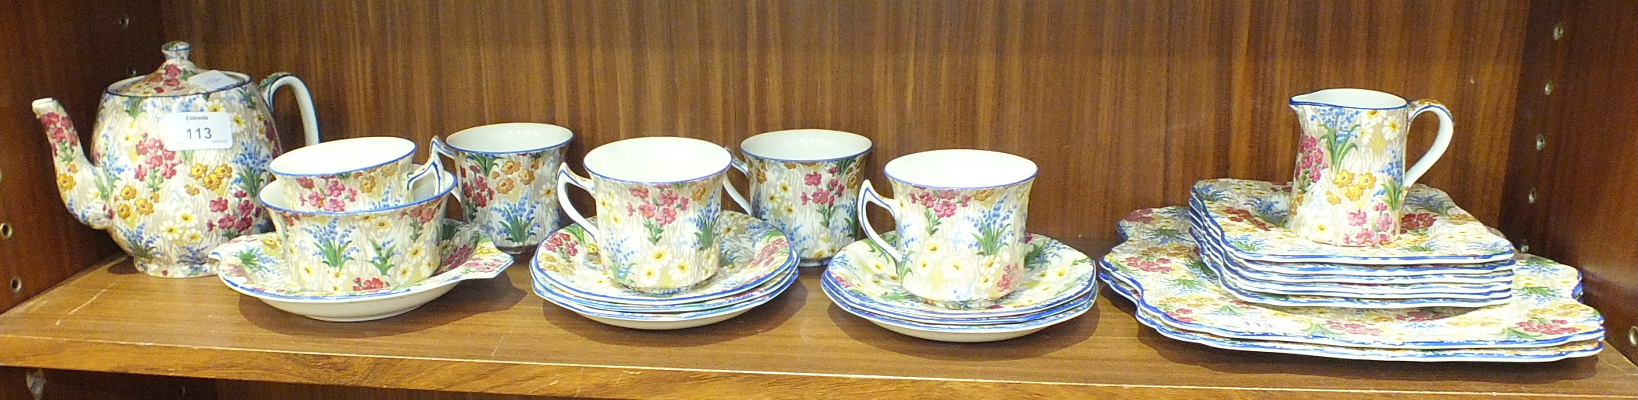 Twenty-three pieces of Royal Winton Grimwades 'Marguerite' pattern tea ware.